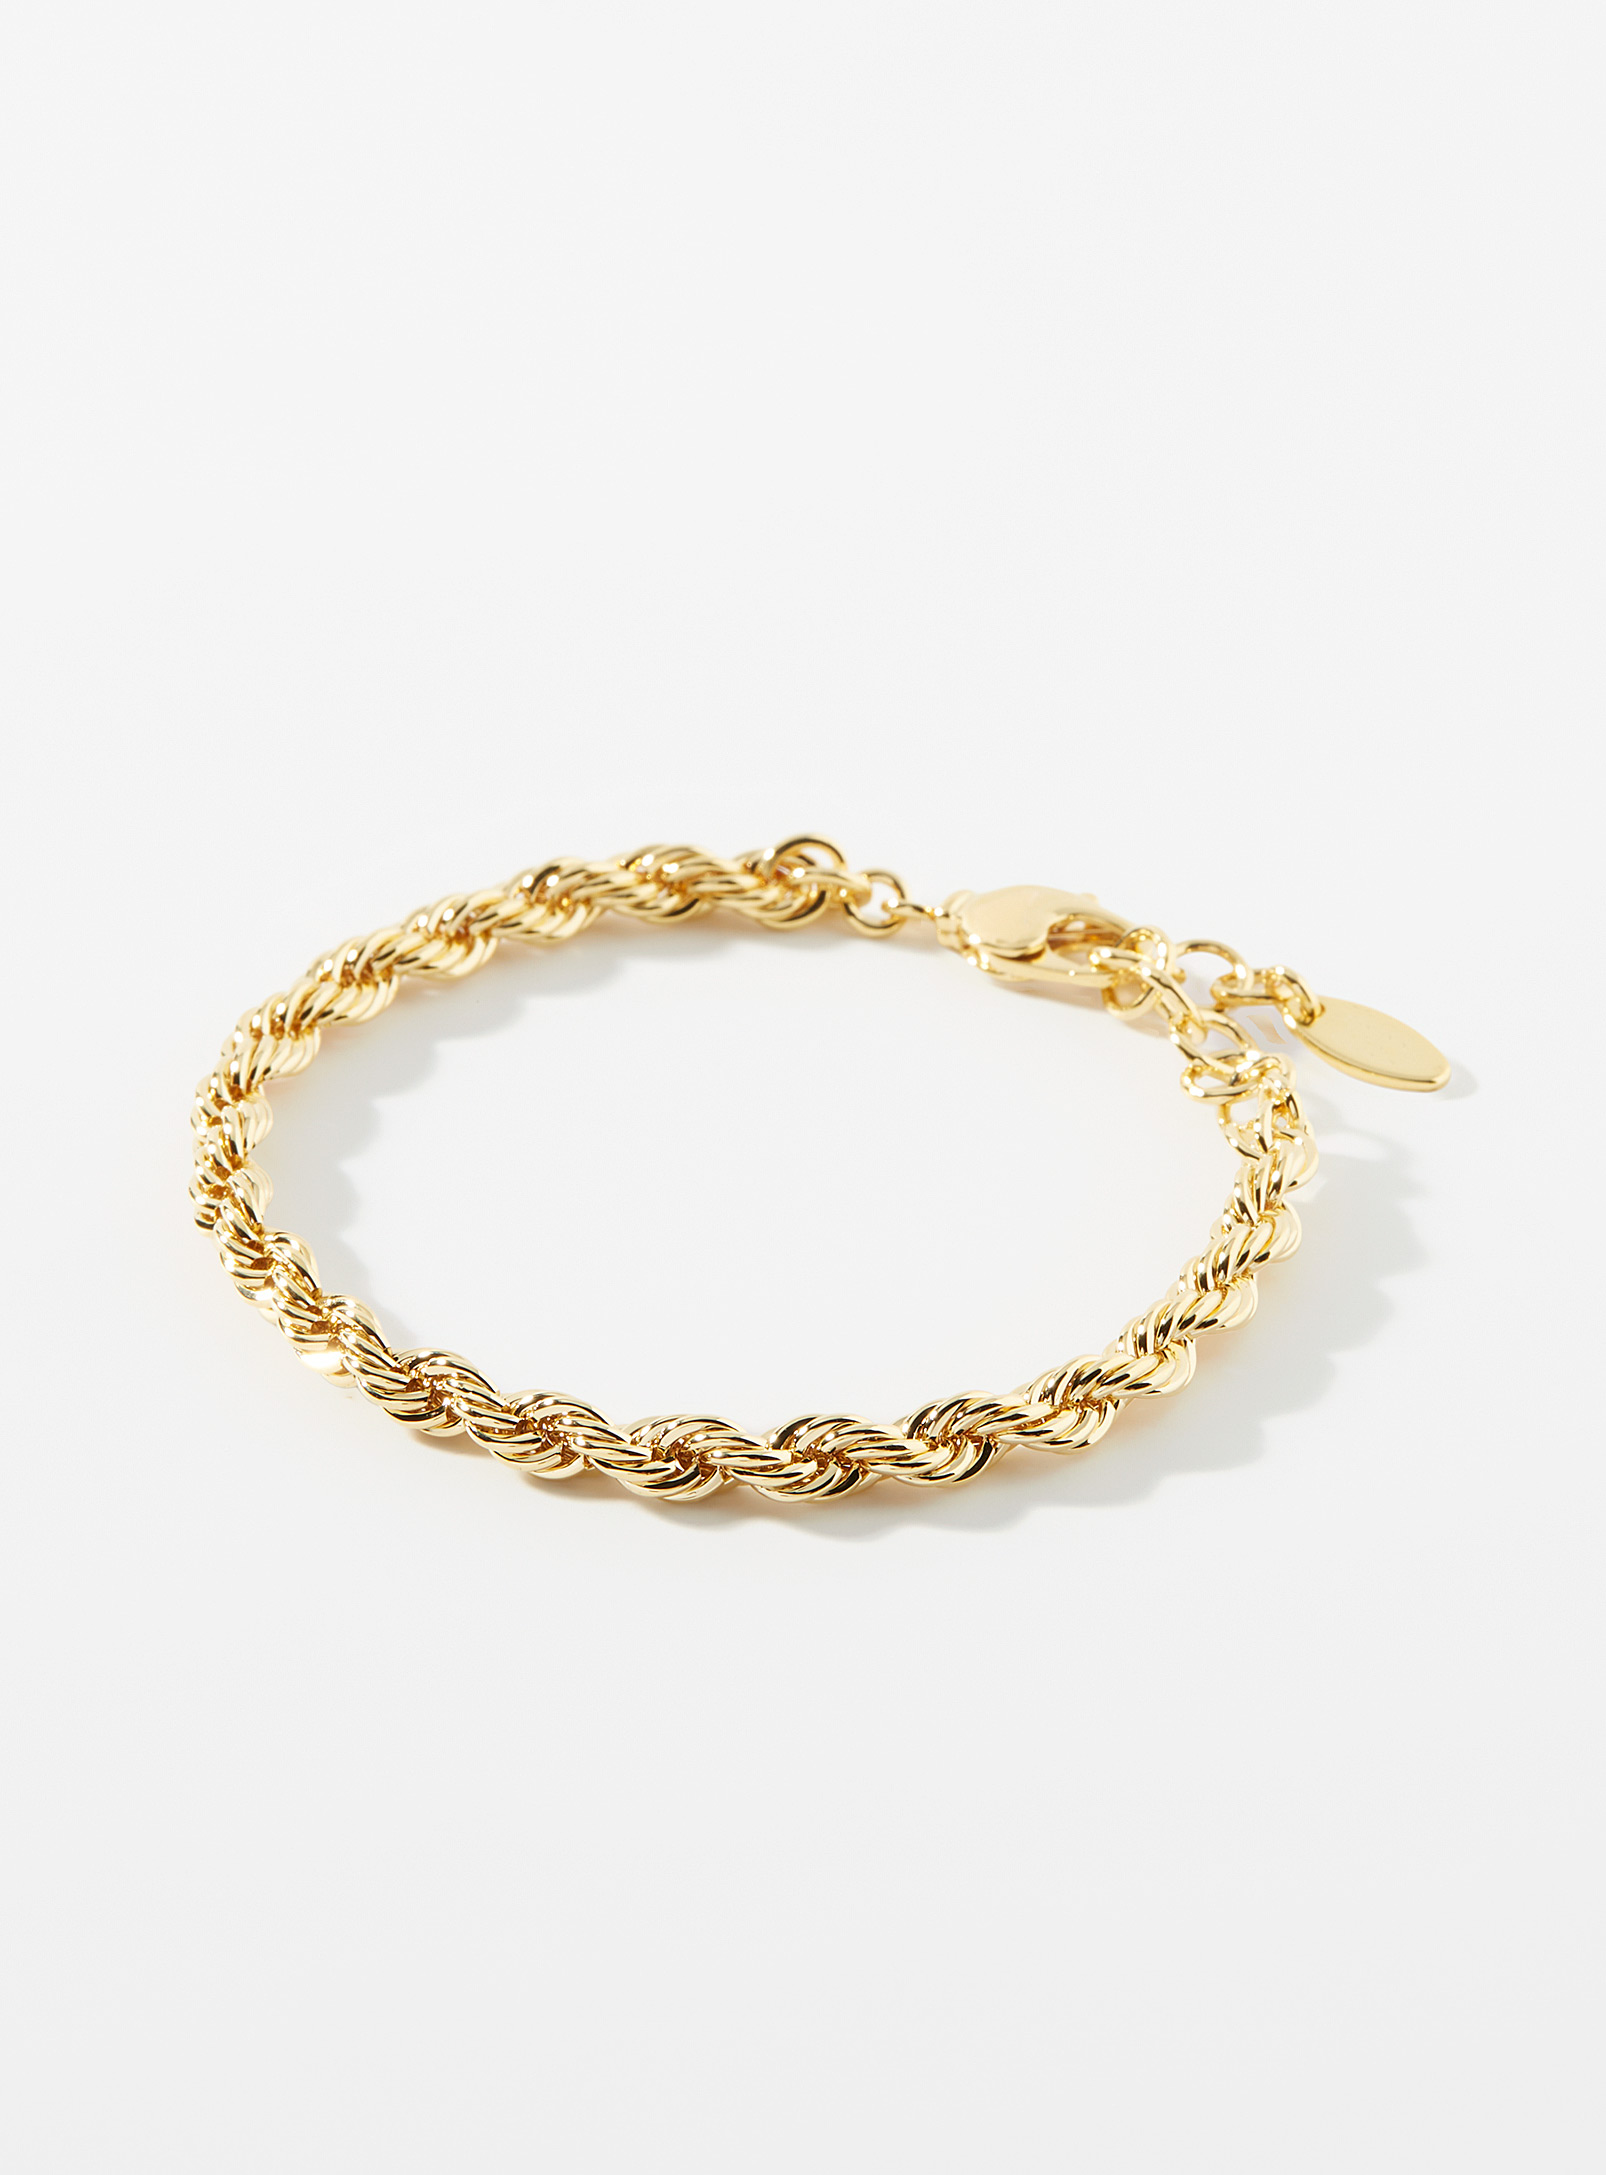 Simons - Women's Twisted gold bracelet